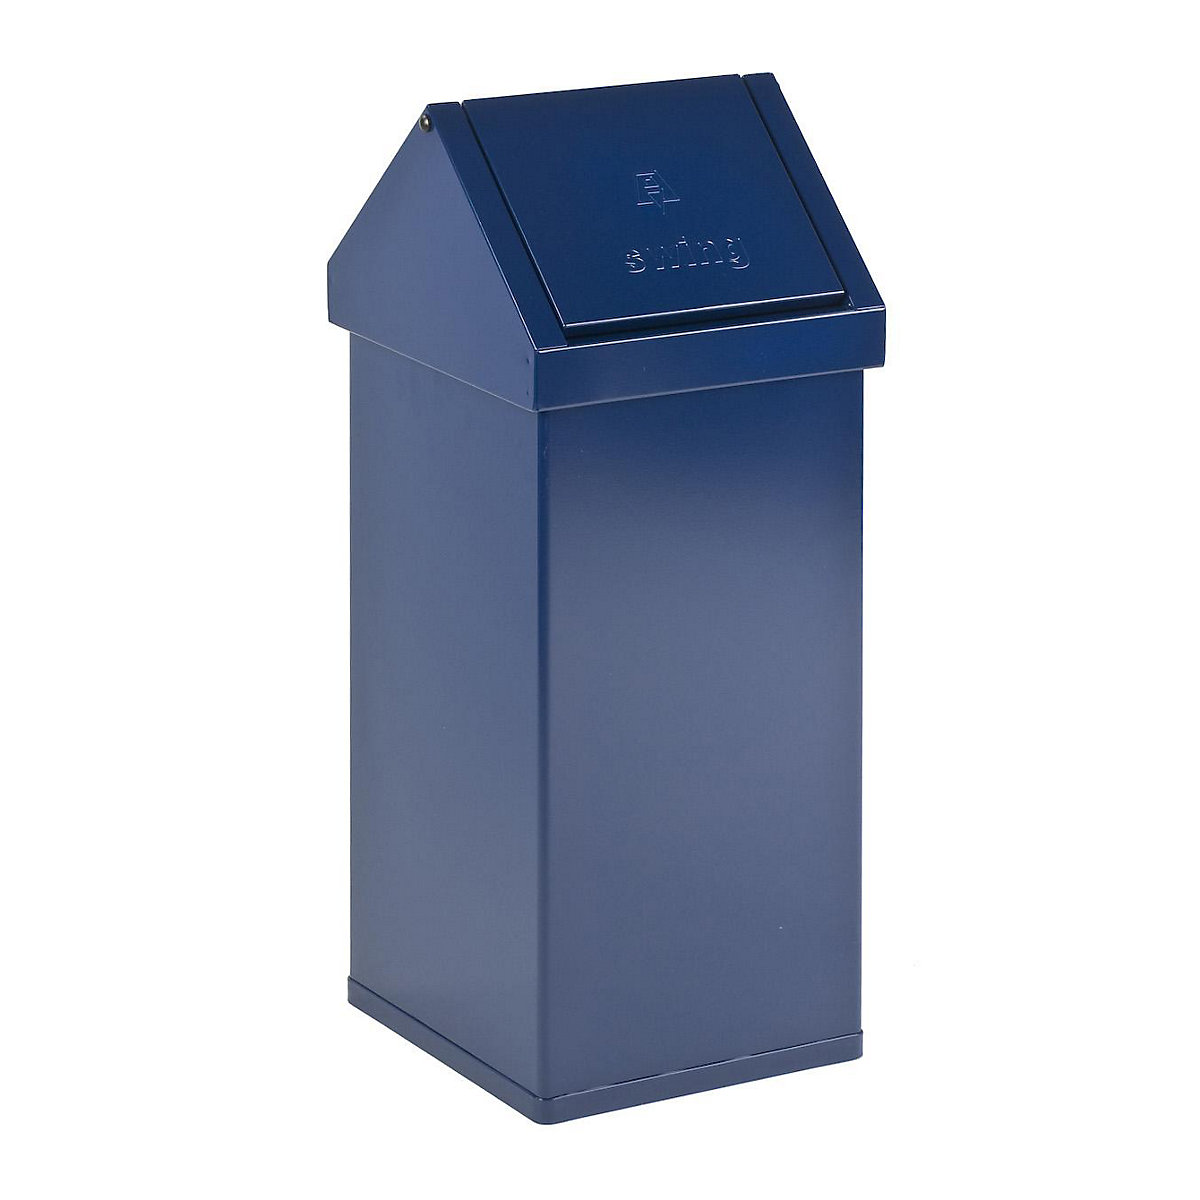 Nádoba na odpad s výkyvným víkem, objem 55 l, š x v x h 300 x 770 x 300 mm, hliník, modrá-2